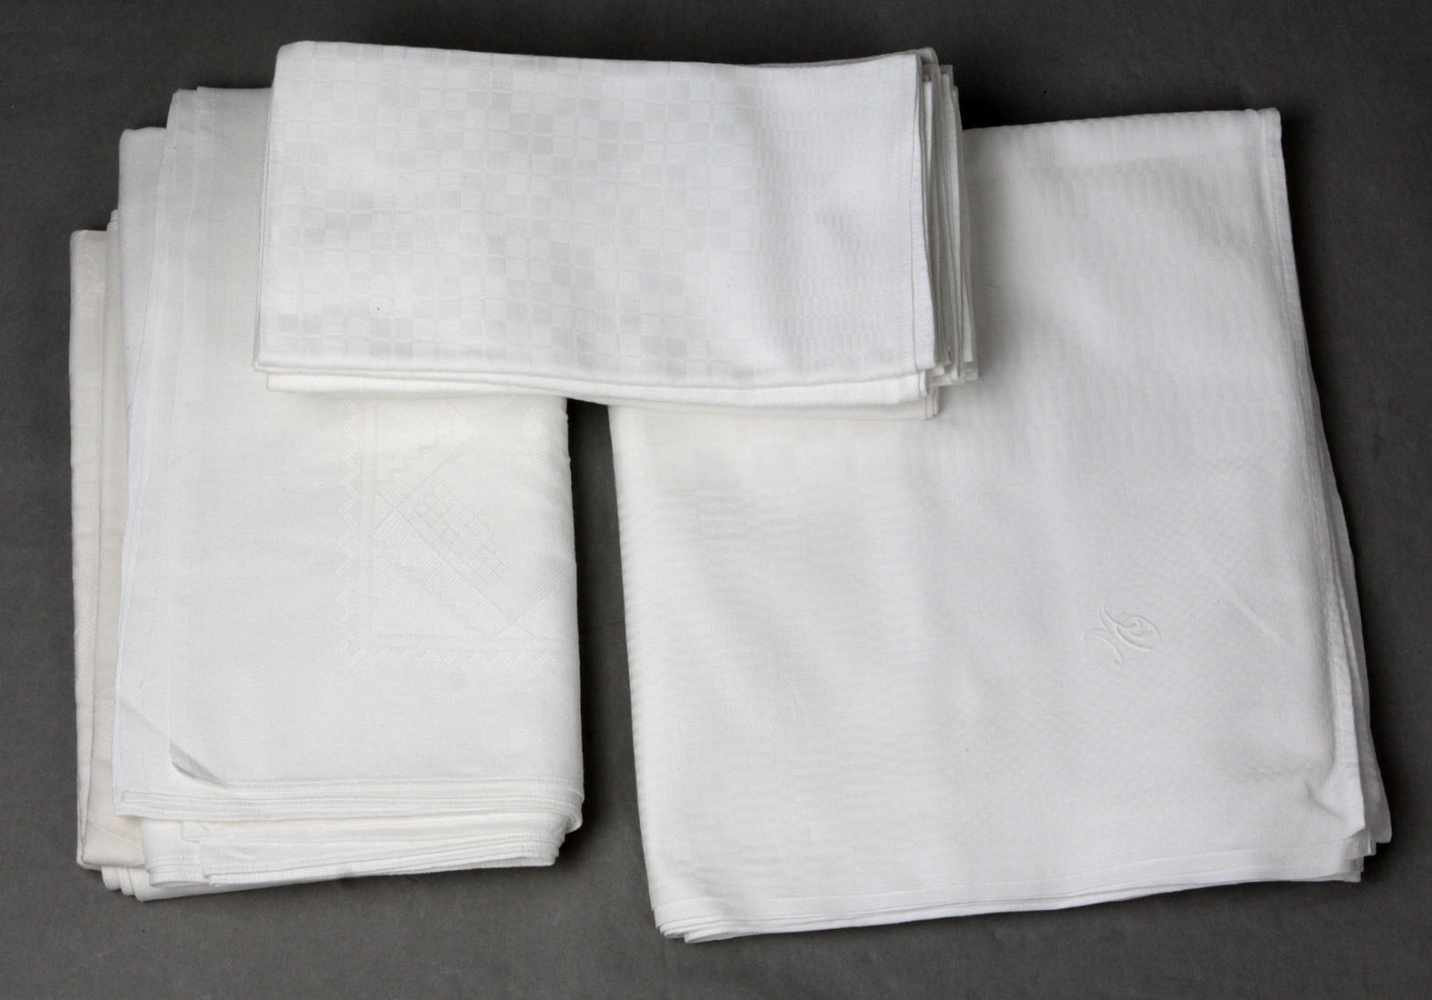 Tafeltuch mit Servietten u.a. weiße Baumwolle mit eingewebtem Würfeldekor, Tafeltuch ca. 210 x 125